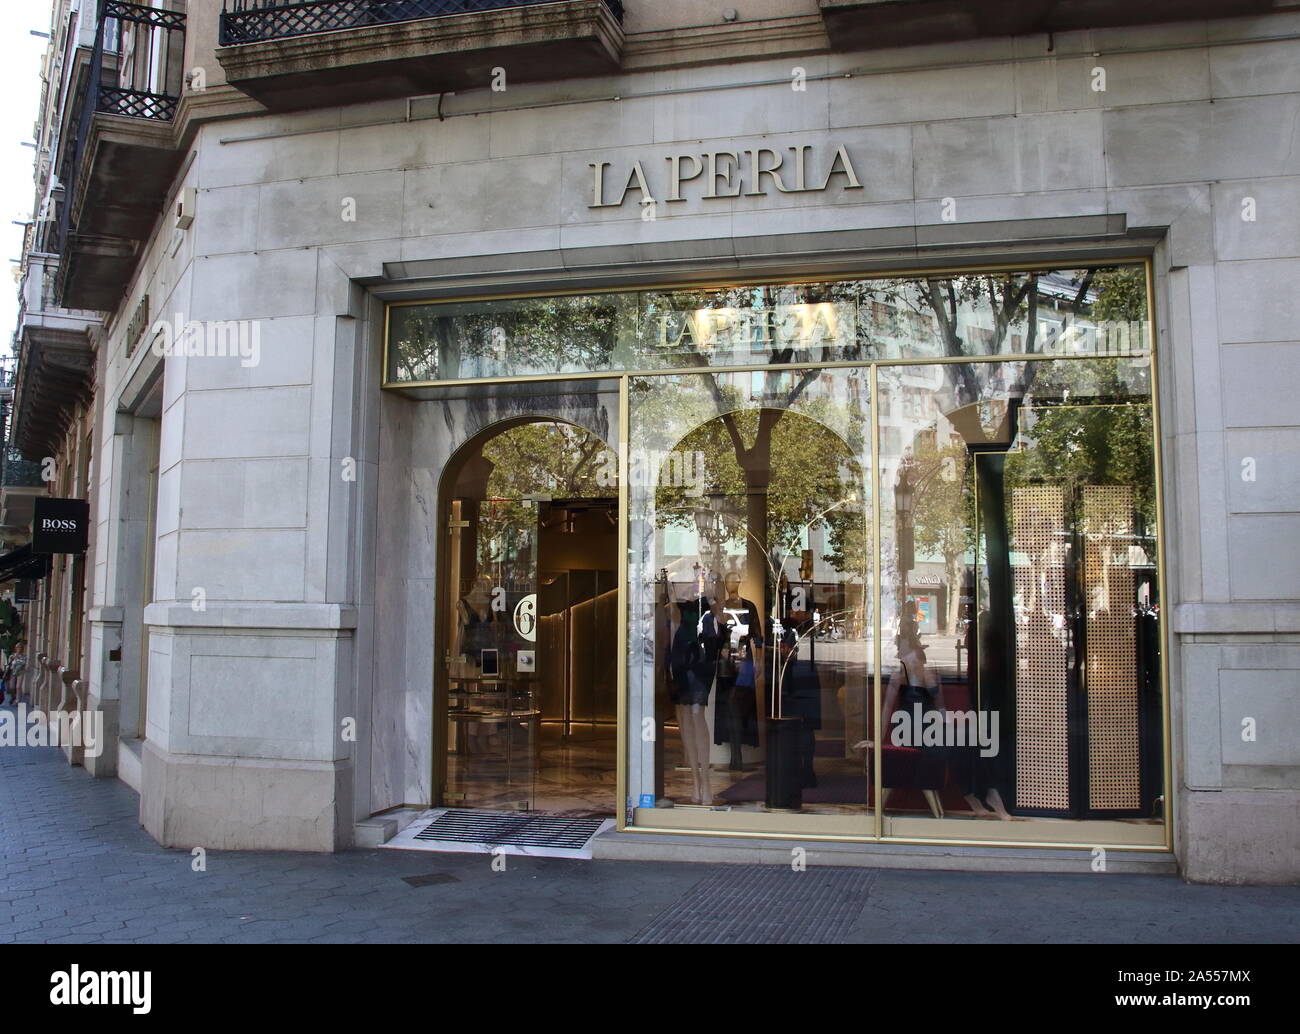 La Perla store seen in central Barcelona Stock Photo - Alamy